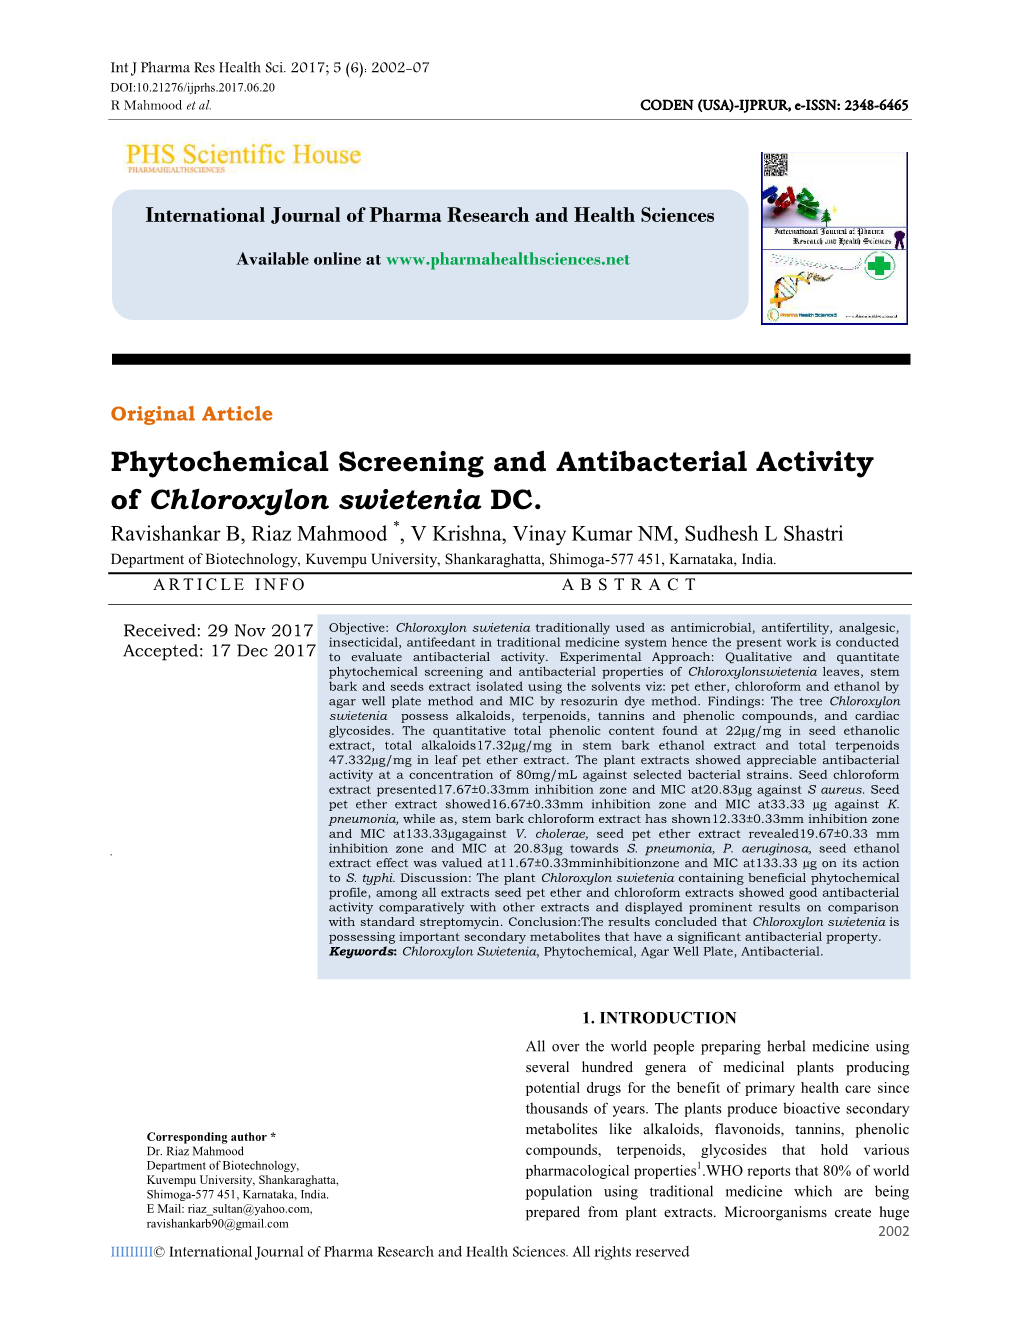 Phytochemical Screening and Antibacterial Activity of Chloroxylon Swietenia DC